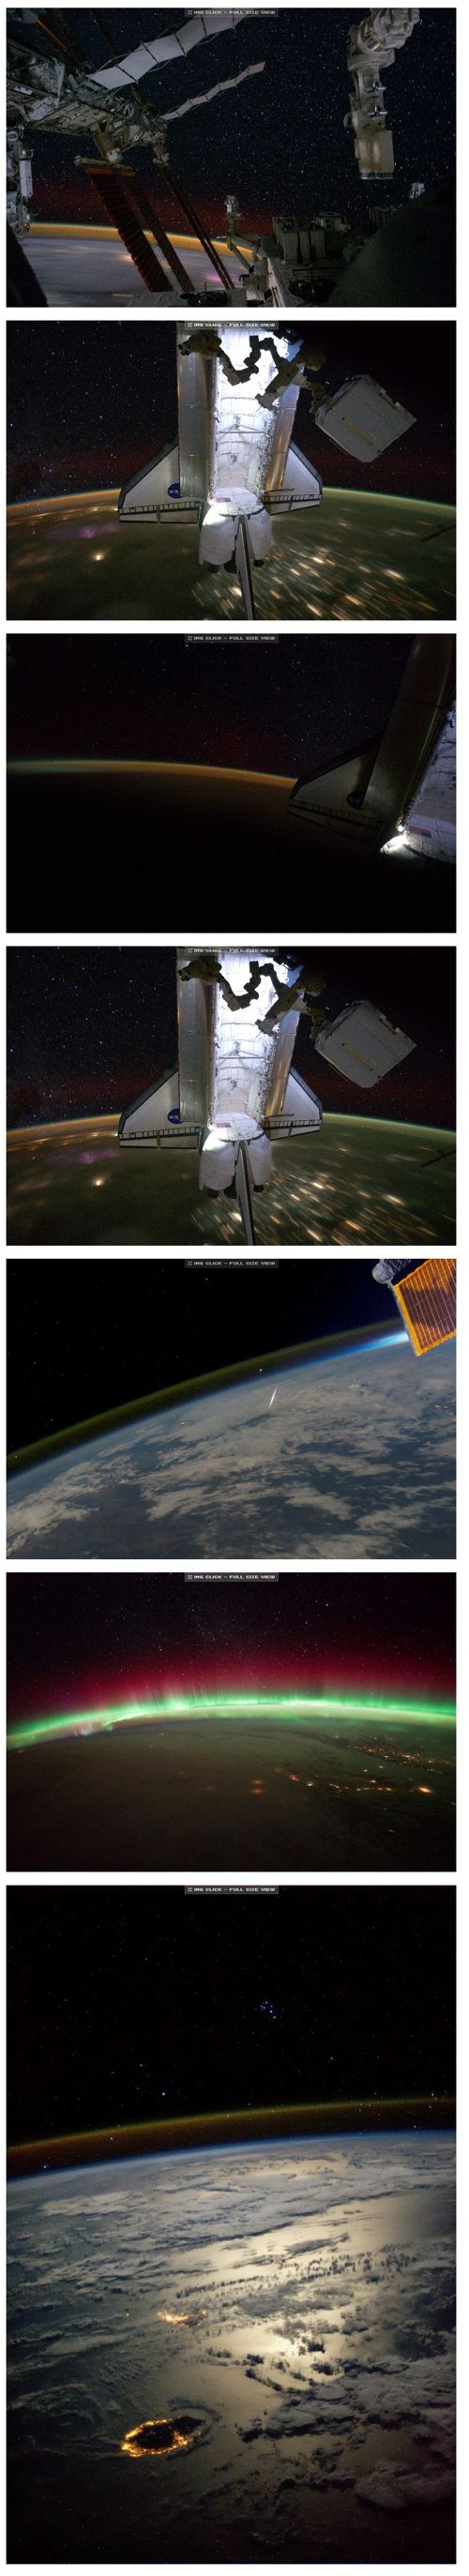 우주에서 찍은 놀라운 사진들.jpg